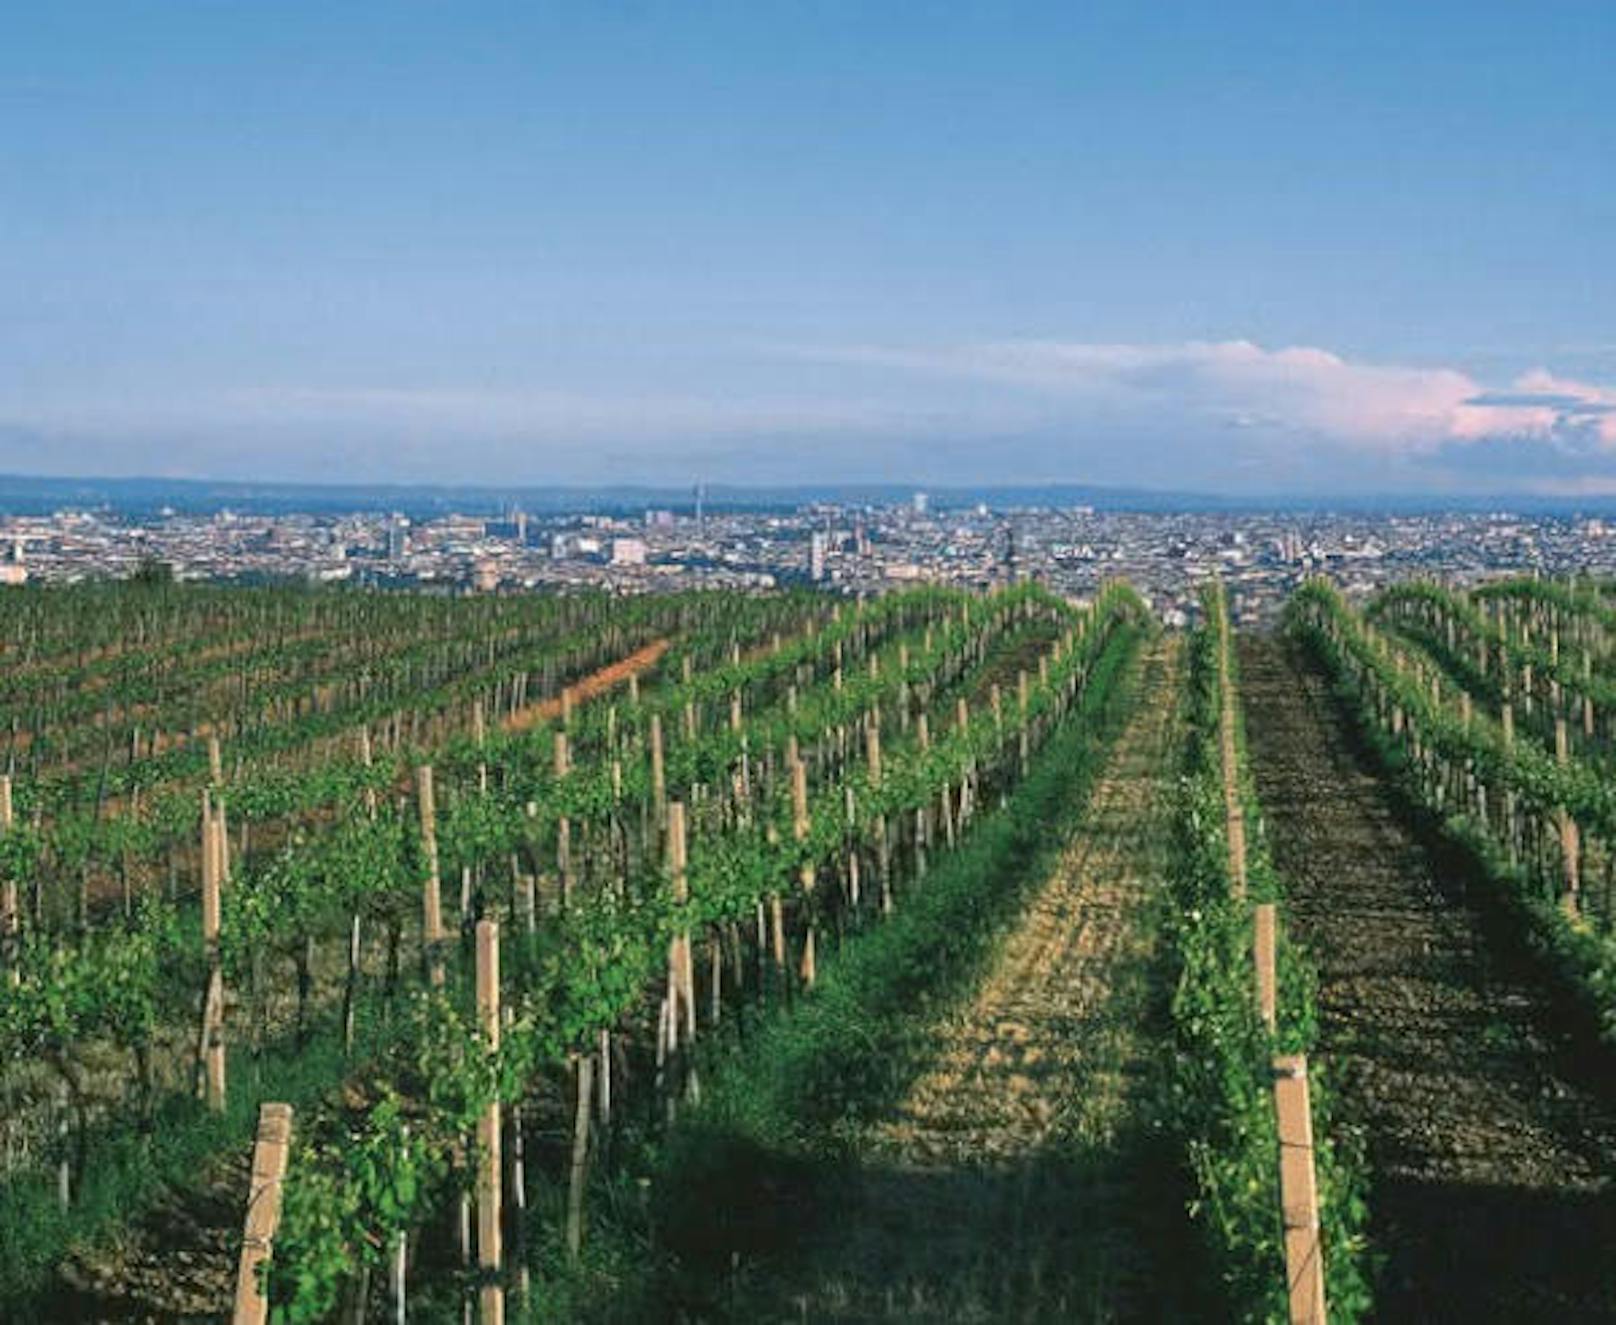 Jedes Jahr im Herbst findet der Wiener Weinwandertag statt. Auf drei Routen mit einer Wegstrecke von insgesamt 25 Kilometern kann die Weinlandschaft erwandert werden.